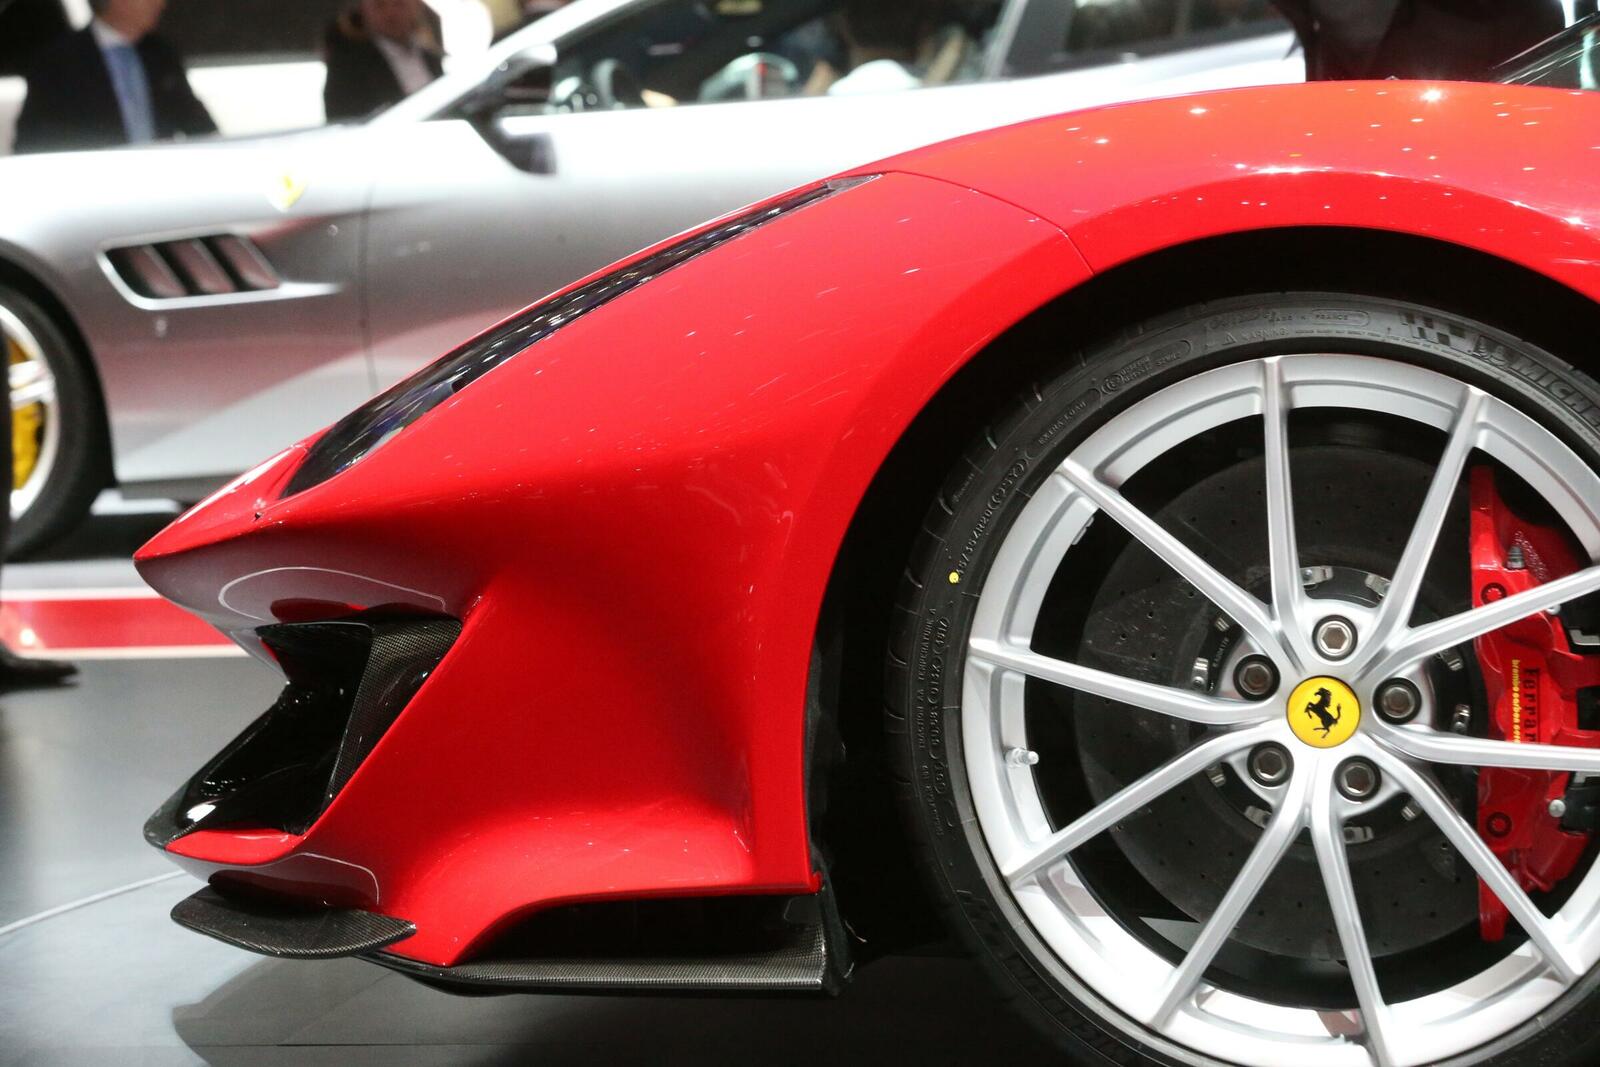 Möglicher Bremsflüssigkeitsverlust löst weltweit einen Eingriff an über 36.000 Ferrari aus. Betroffen ist auch die Baureihe 488.